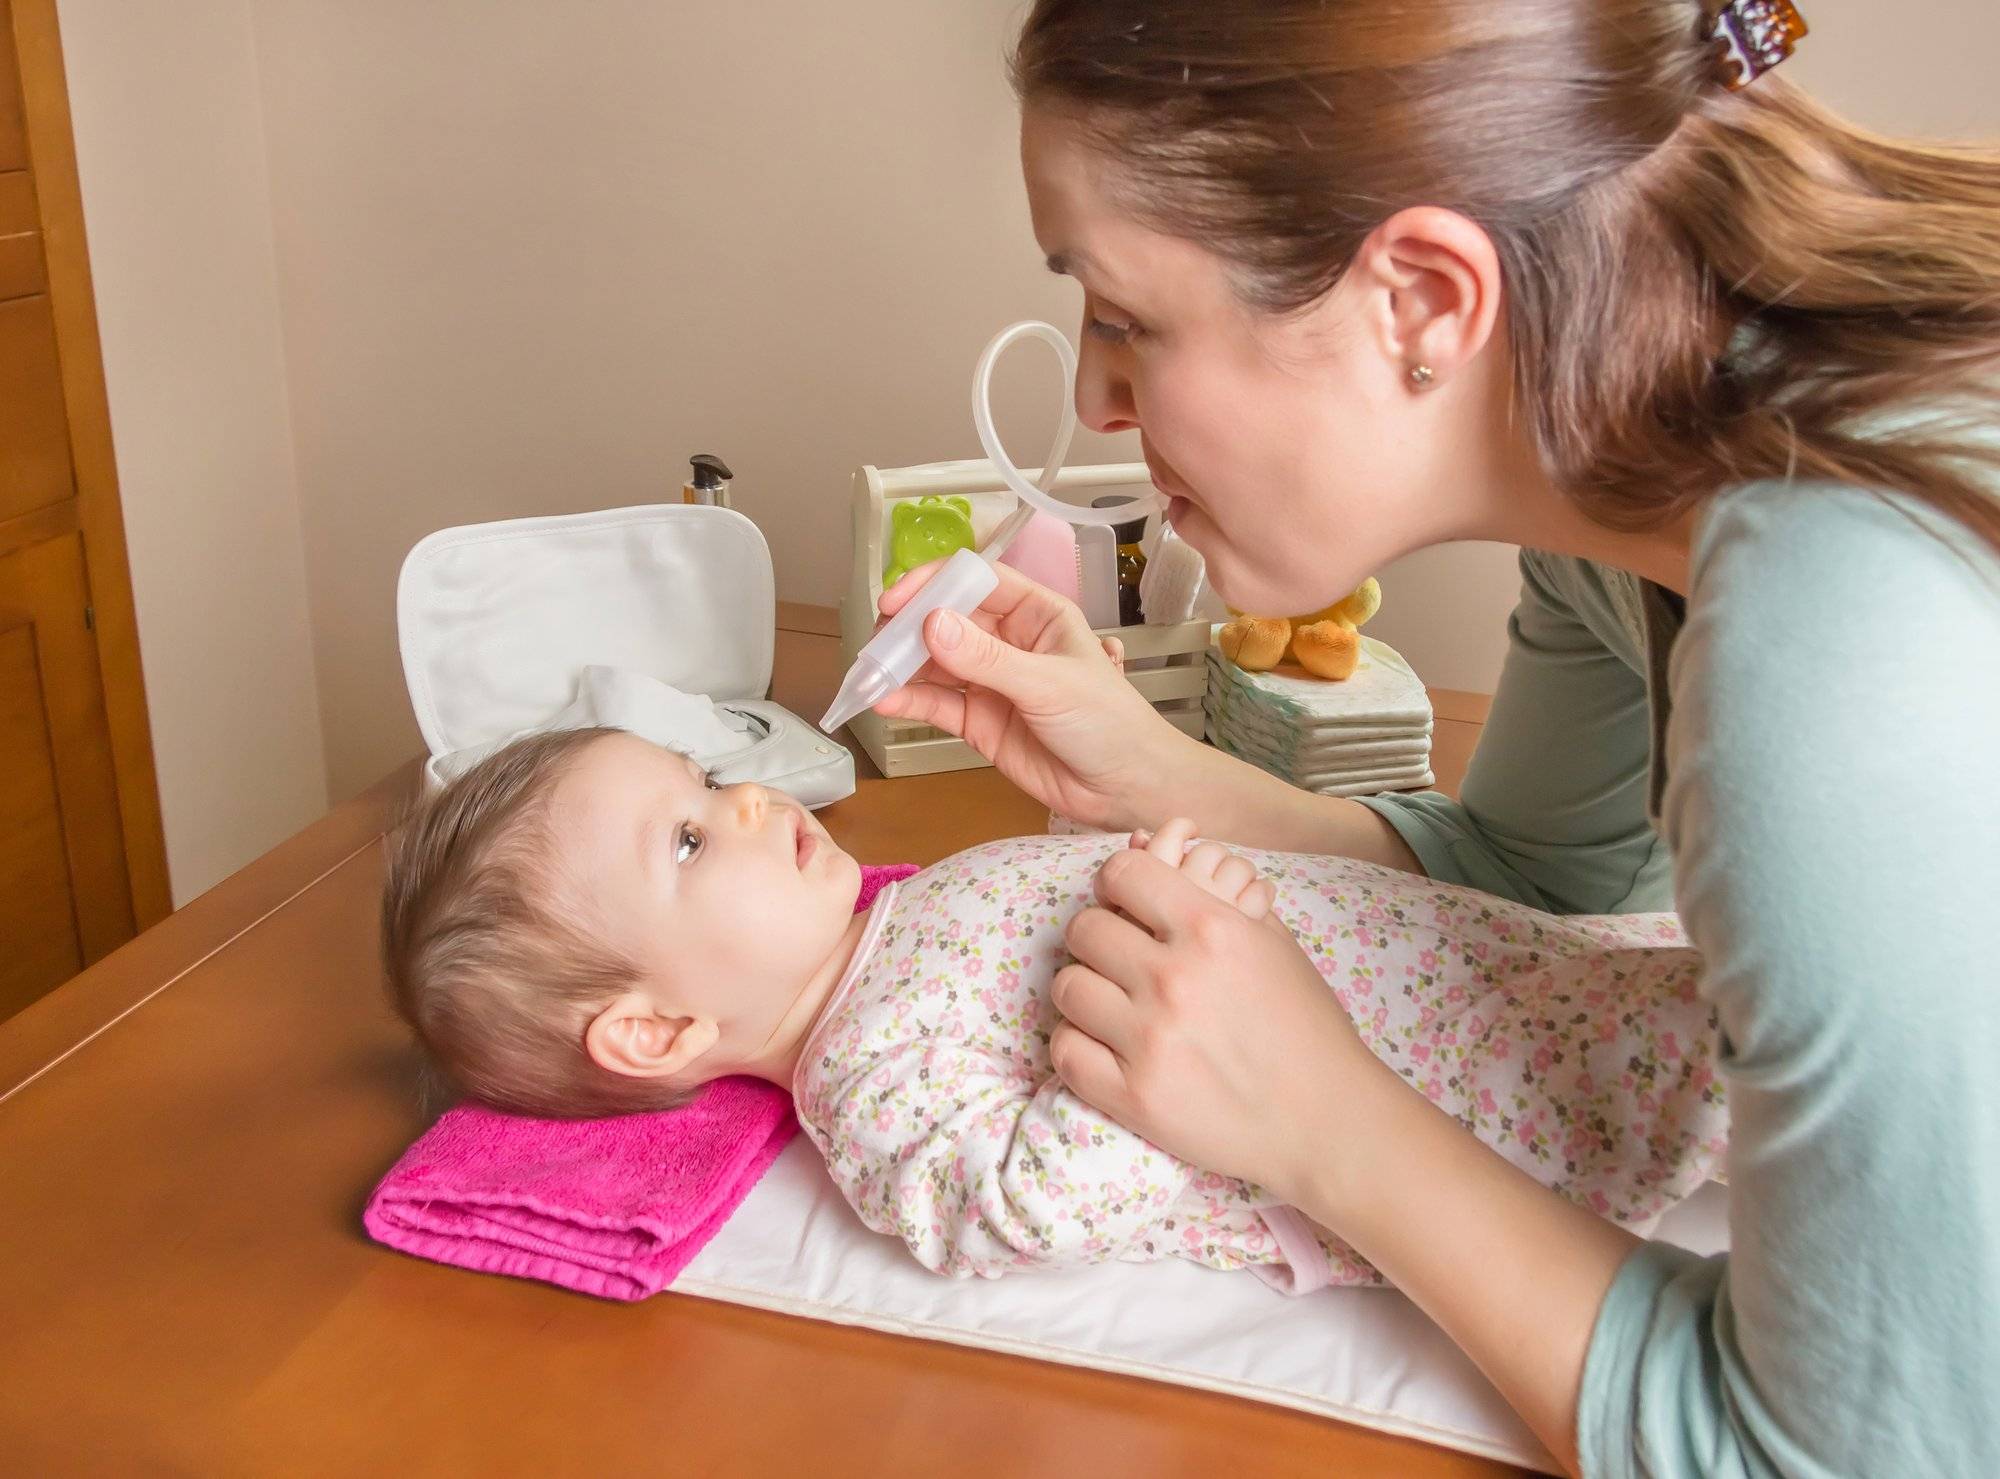 Капли в нос для новорожденных: виды, рекомендации, противопоказания